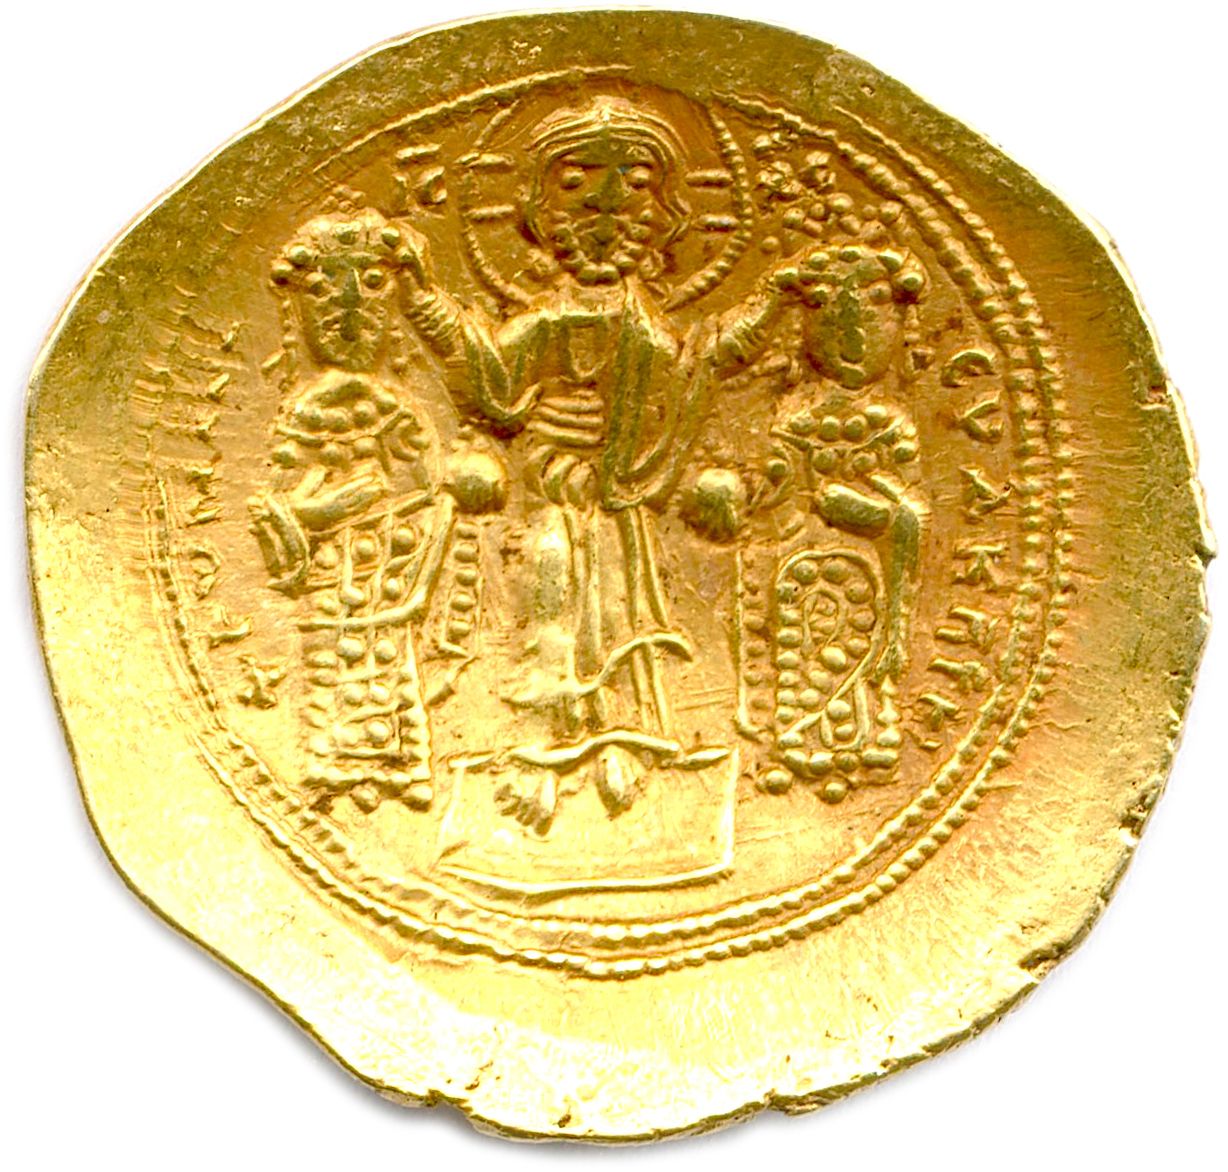 Null ROMANO IV DIOGENO 1 de enero de 1068 - 24 de octubre de 1071
ROMANO / IC-XC&hellip;